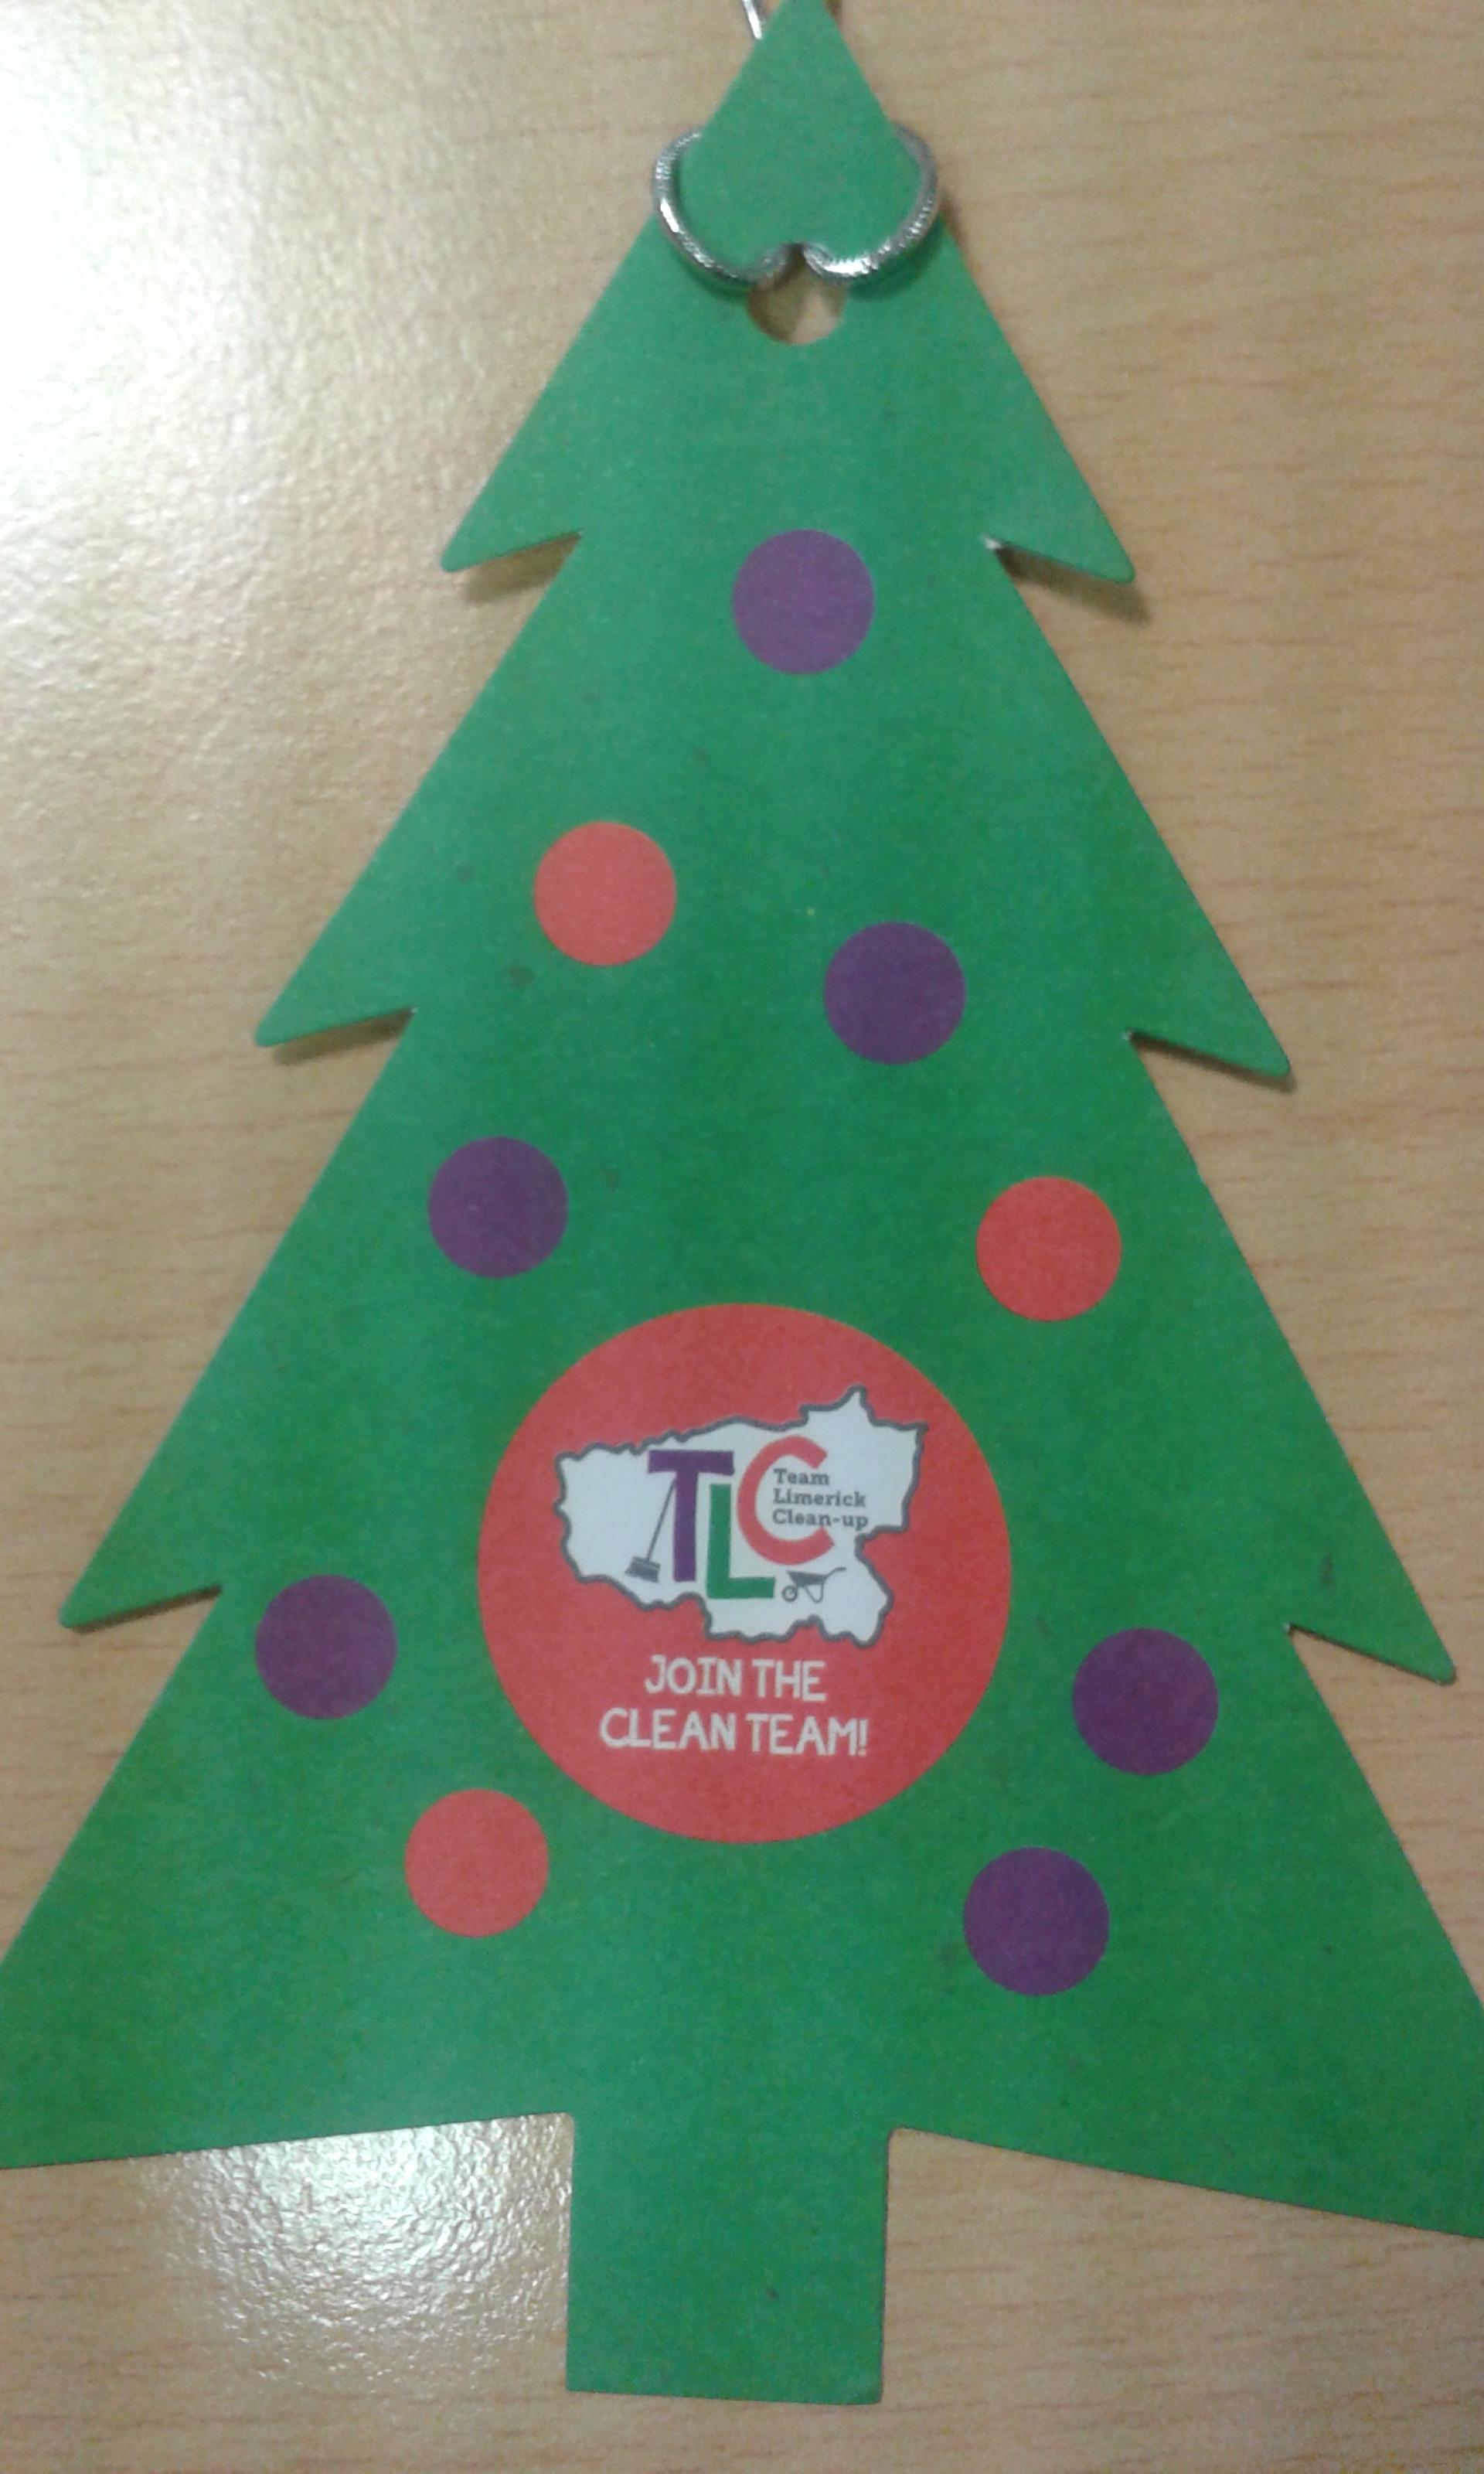 TLC Green Christmas Tree